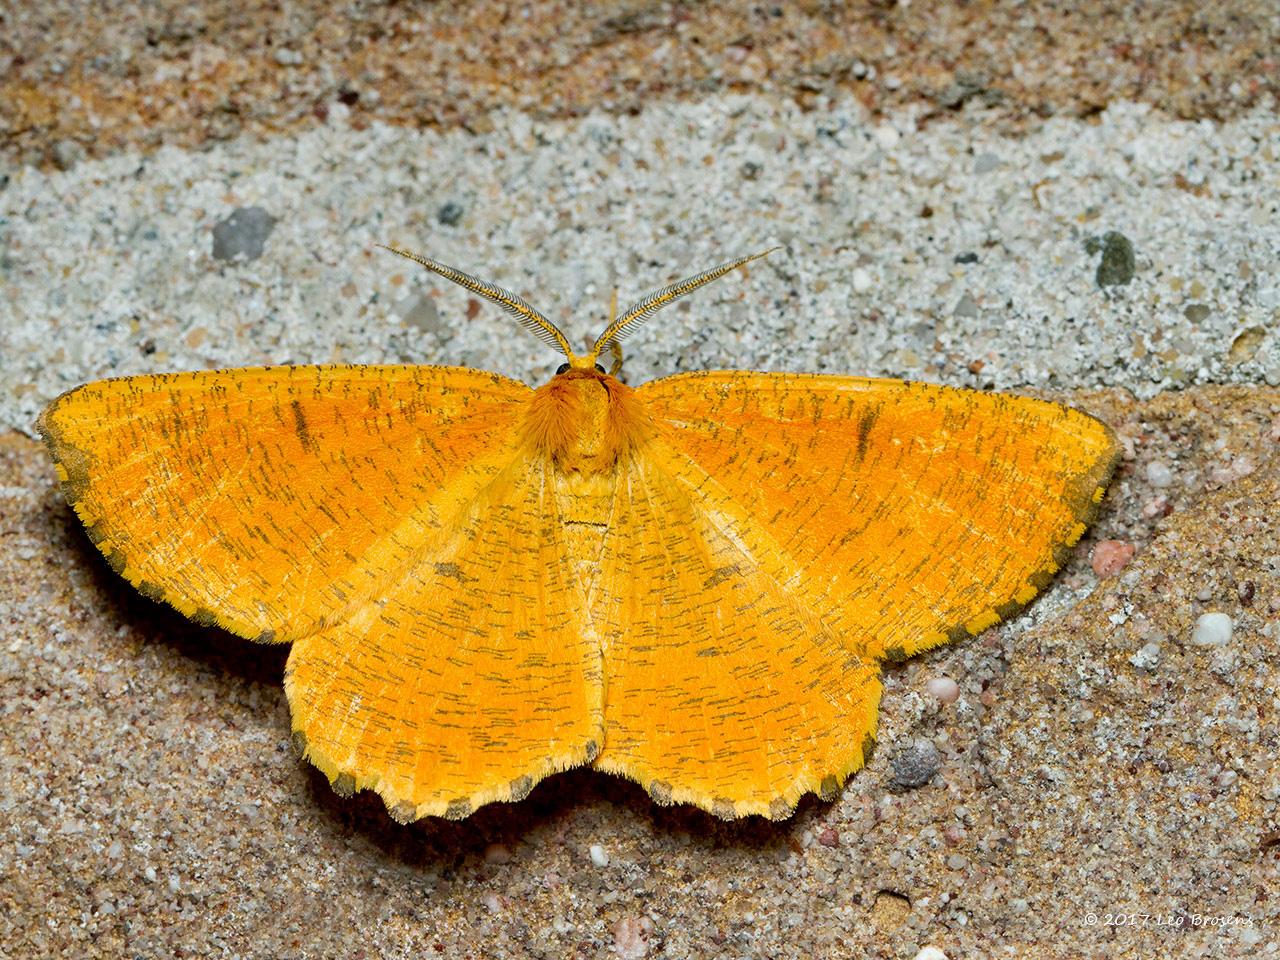 Oranje-iepentakvlinder-Angerona-prunaria-20140607g1280IMG_4715acrfb_0.jpg